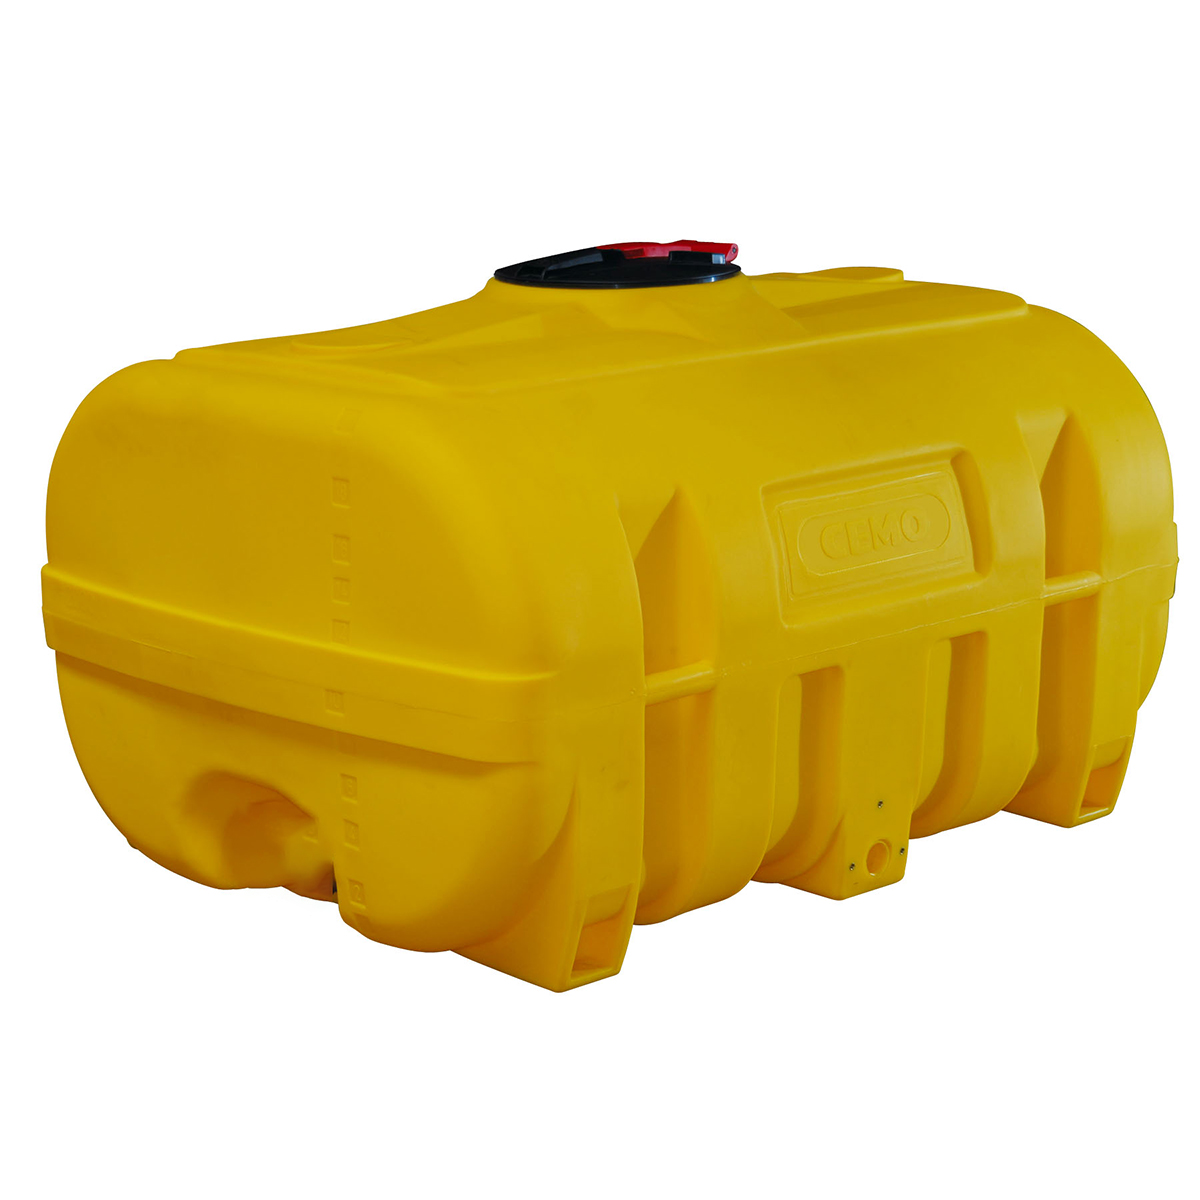 Fût de transport, en PE, coloré en jaune, en forme de valise